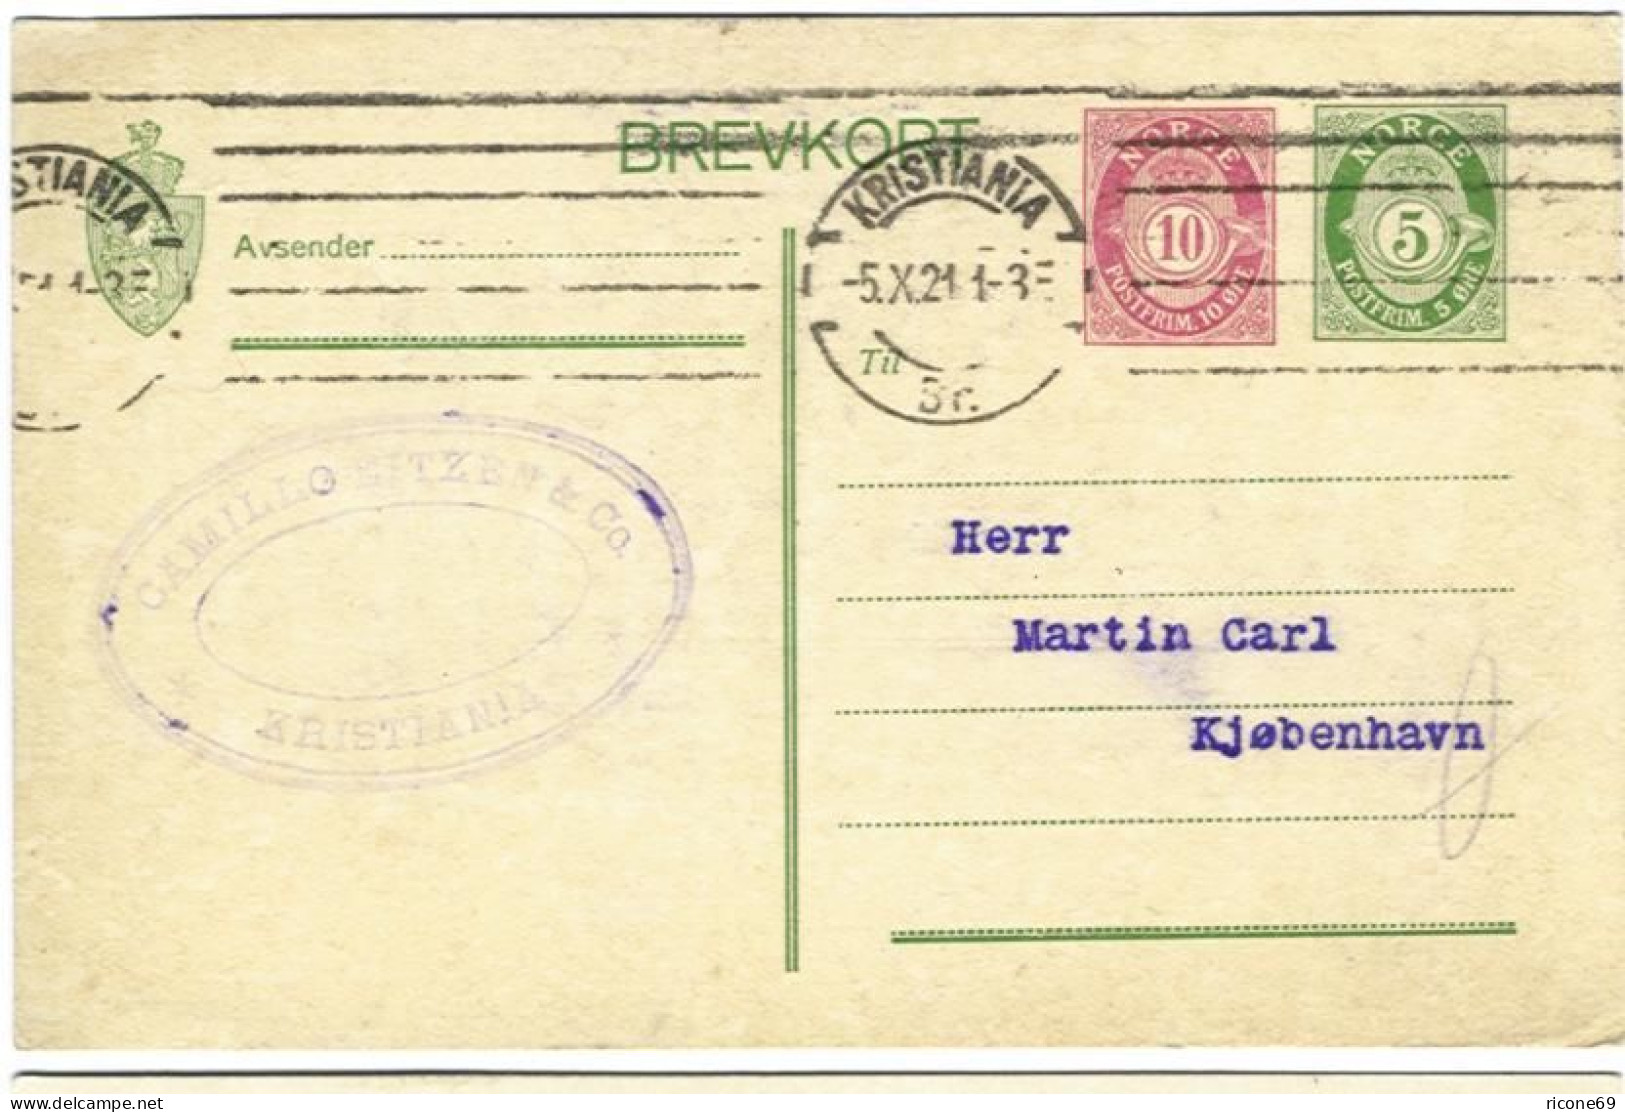 Norwegen 1921, 5+10 öre Ganzsache M. 2 Wertstempeln, Auslandsgebr. N. DK. #S146 - Ganzsachen